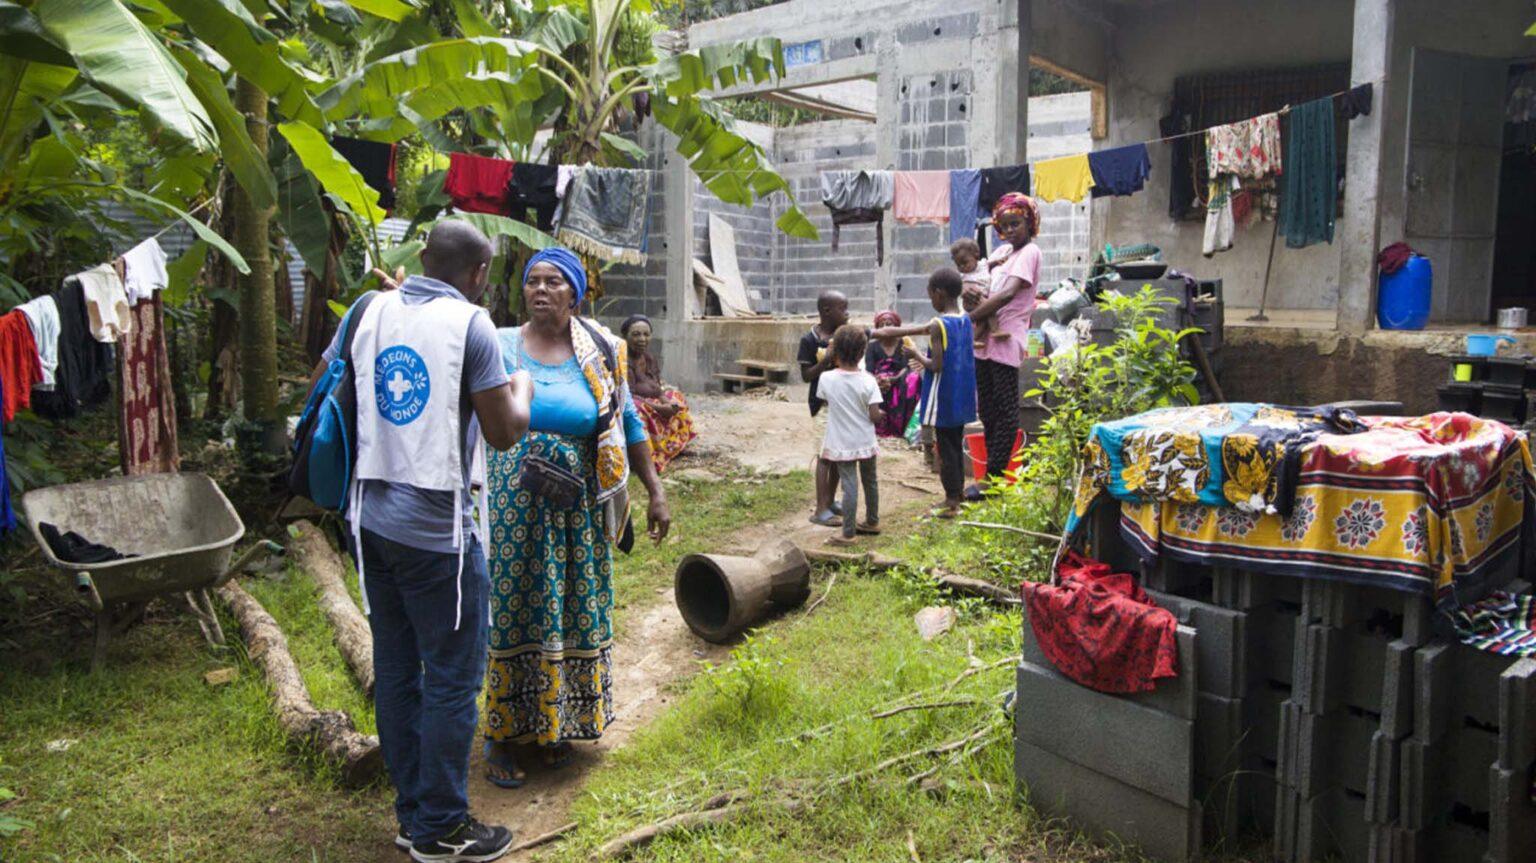     Mayotte : 78 cas de choléra recensés, dont un dans un nouveau quartier

